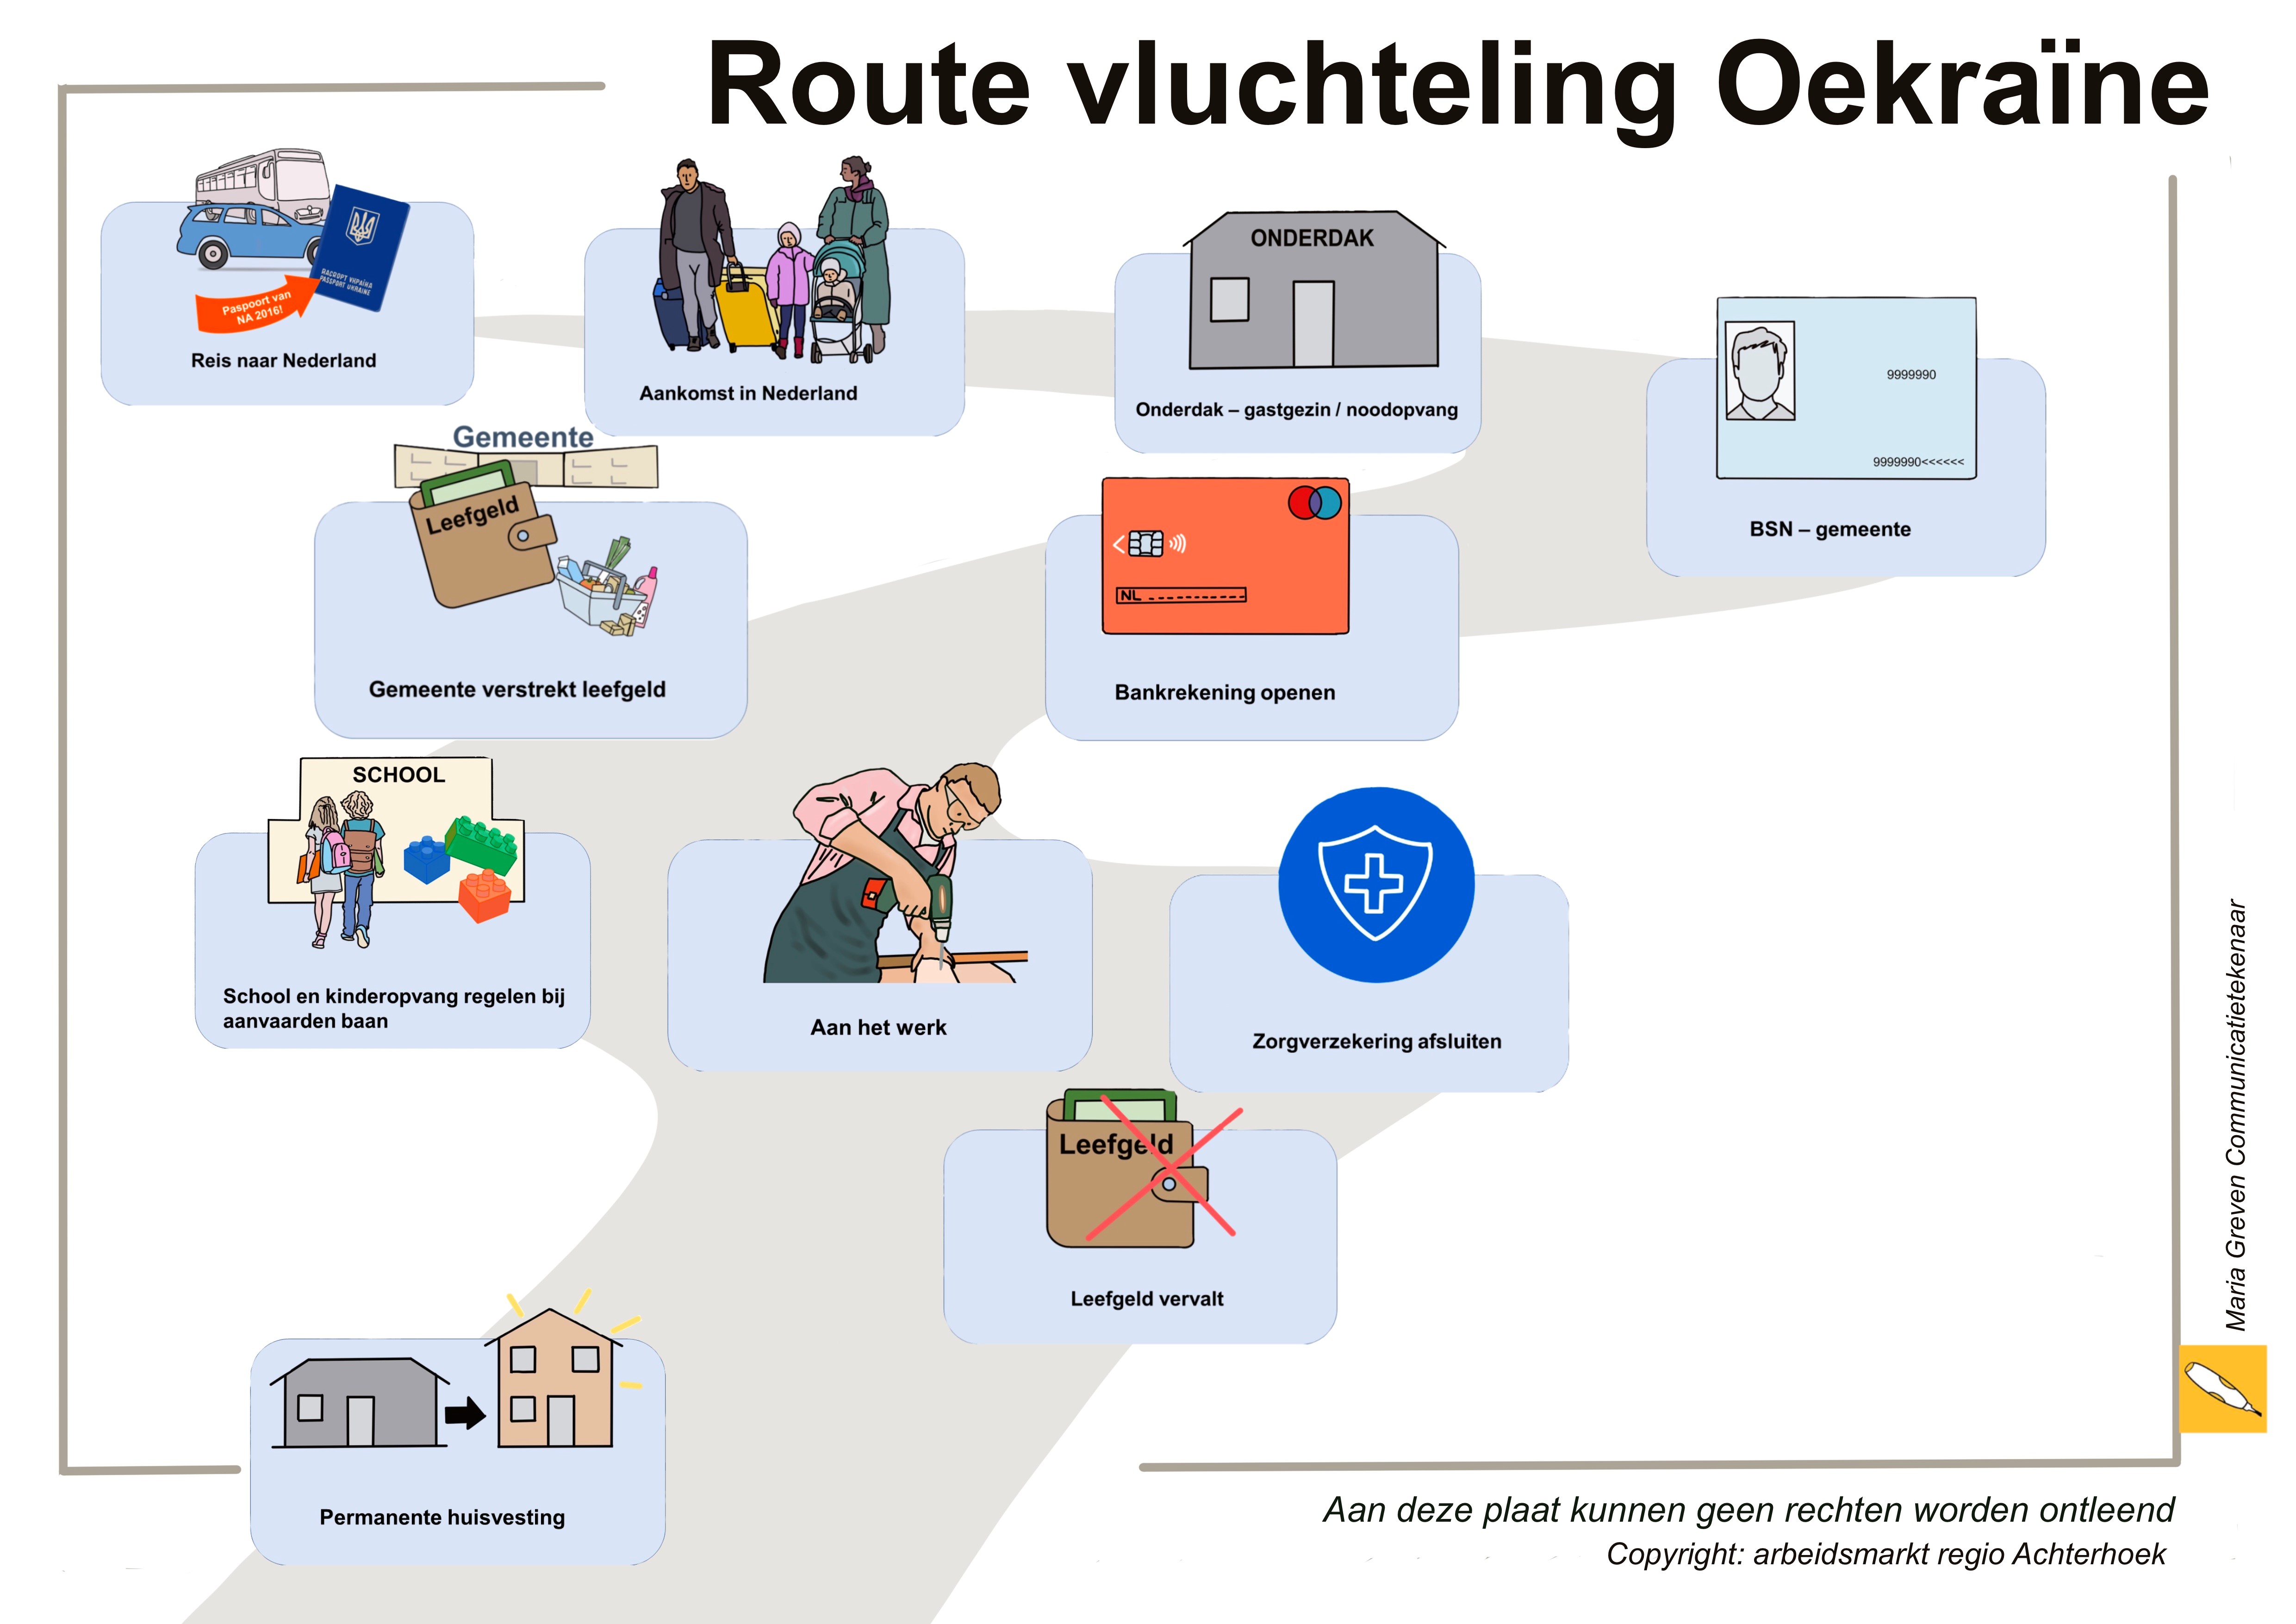 Route die een vluchteling uit de Oekraïne in Nederland aflegt